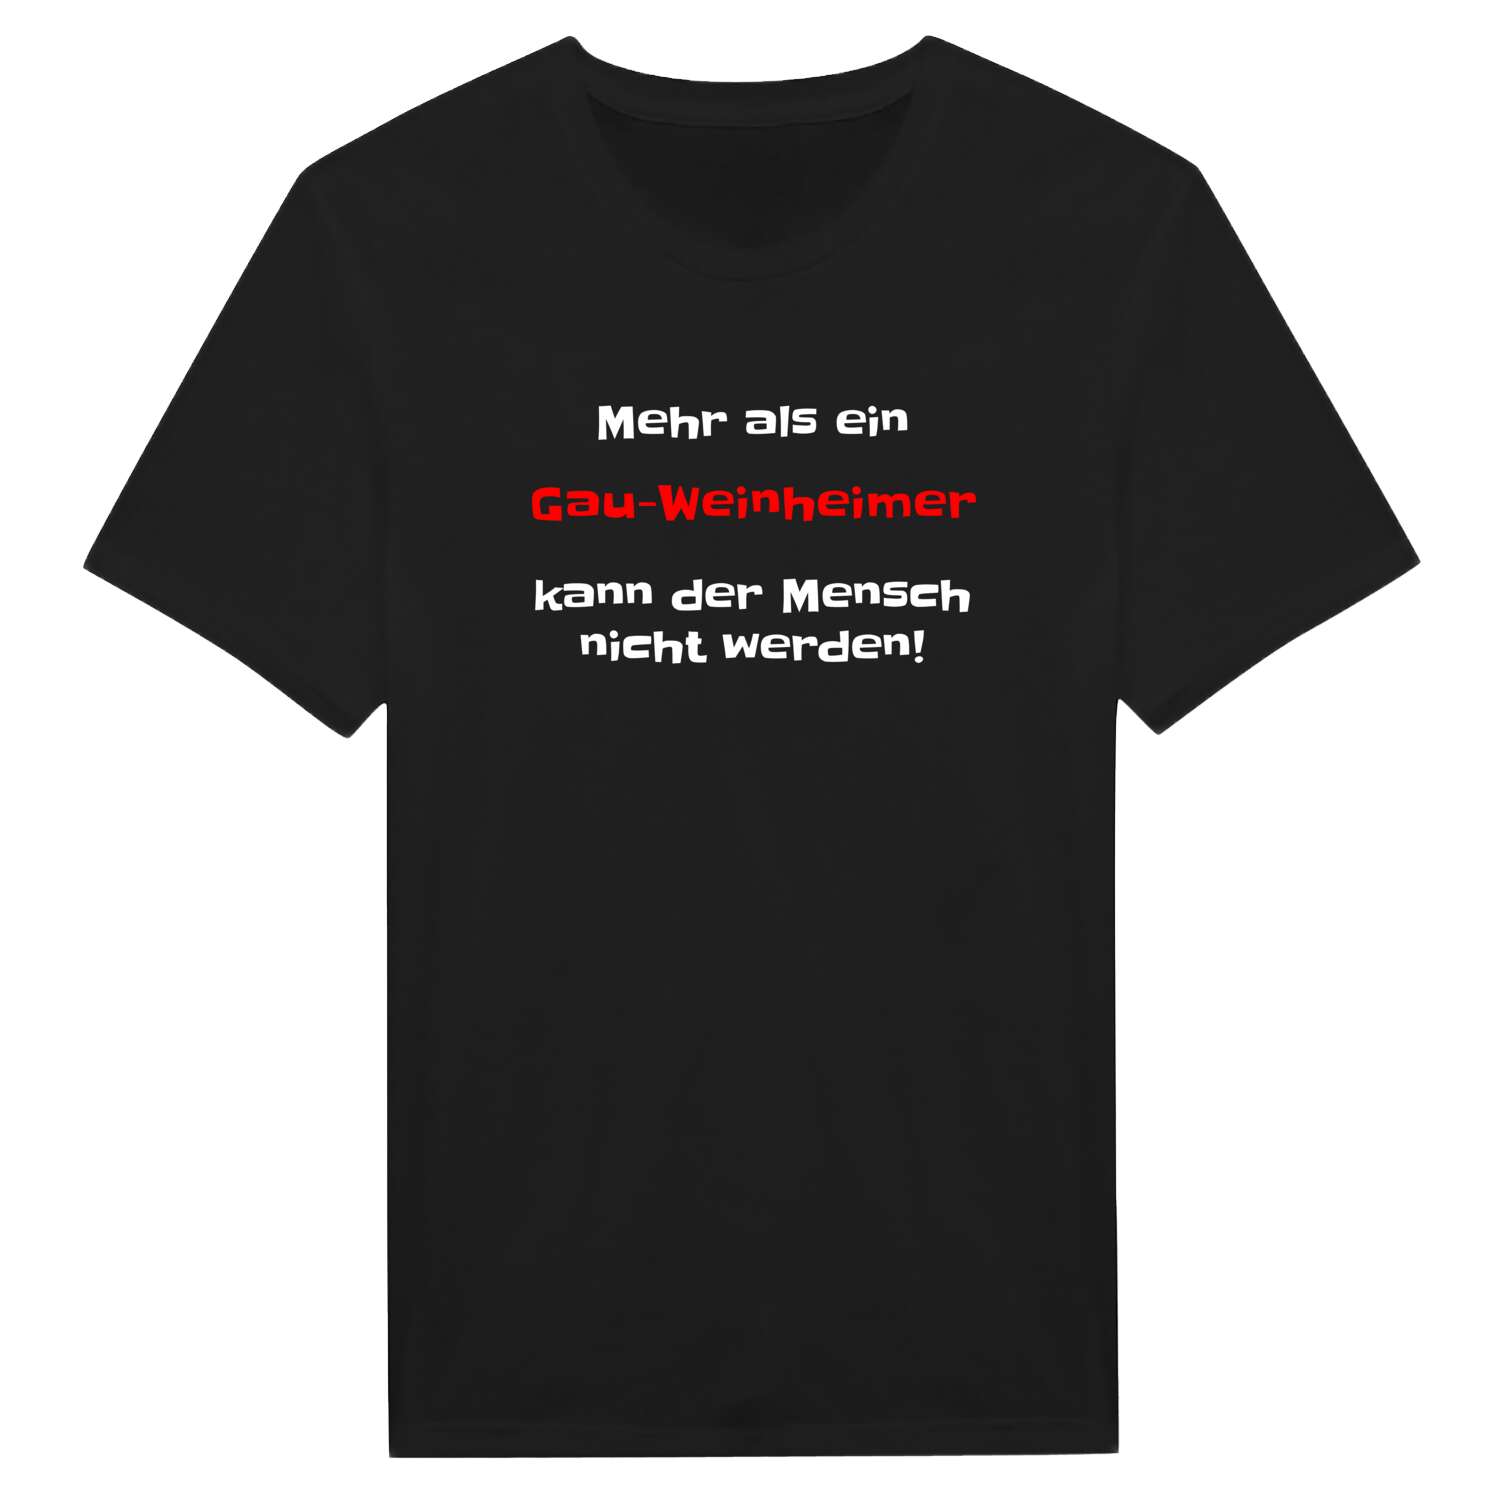 Gau-Weinheim T-Shirt »Mehr als ein«